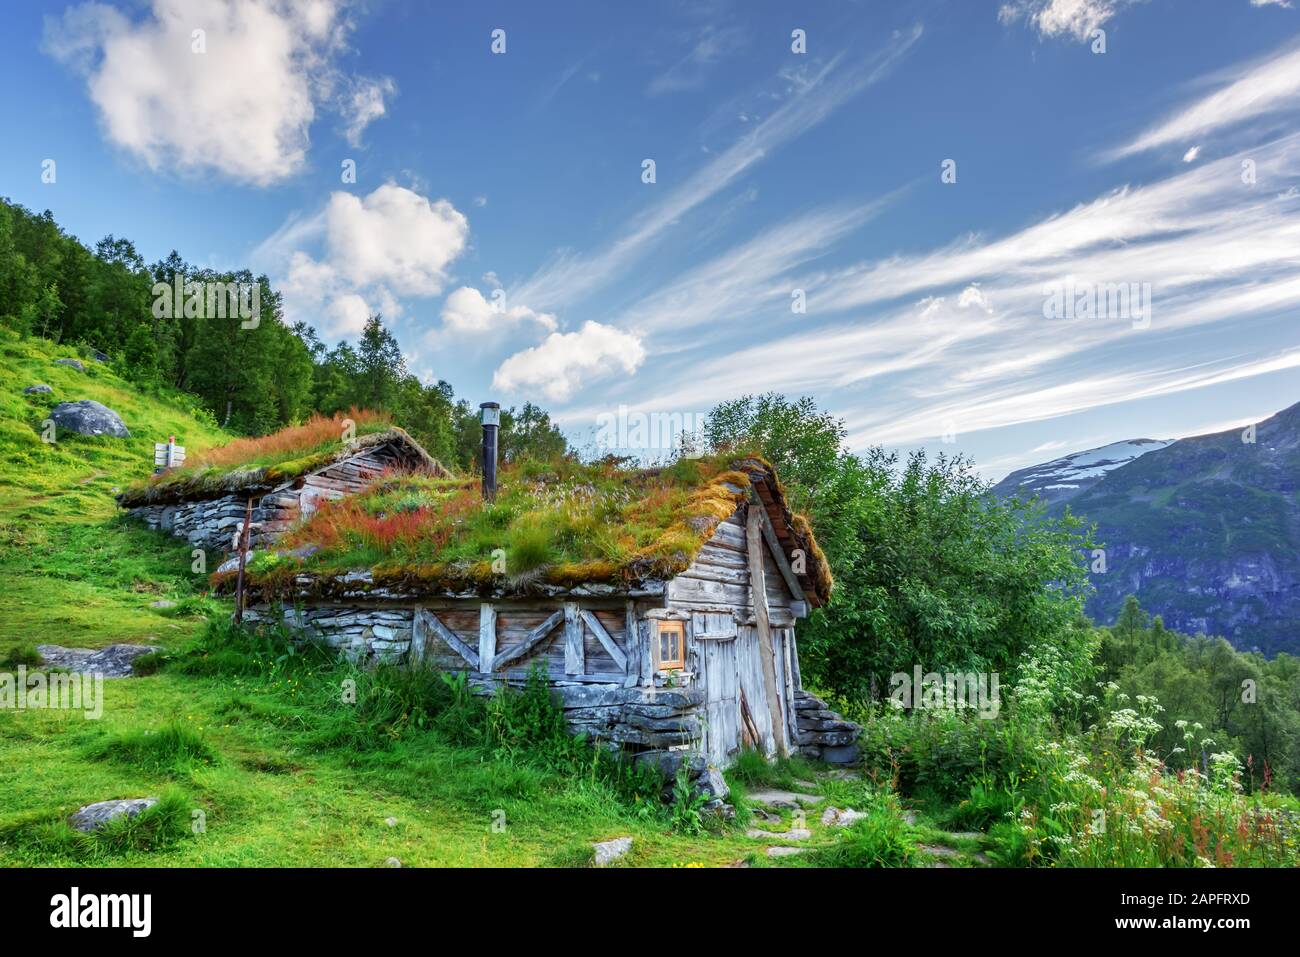 Casas de madera antiguas típicas noruegas con techos de hierba cerca del fiordo Sunnylvsfjorden y las famosas cascadas de Seven Sisters, al oeste de Noruega. Fotografía de paisajes Foto de stock